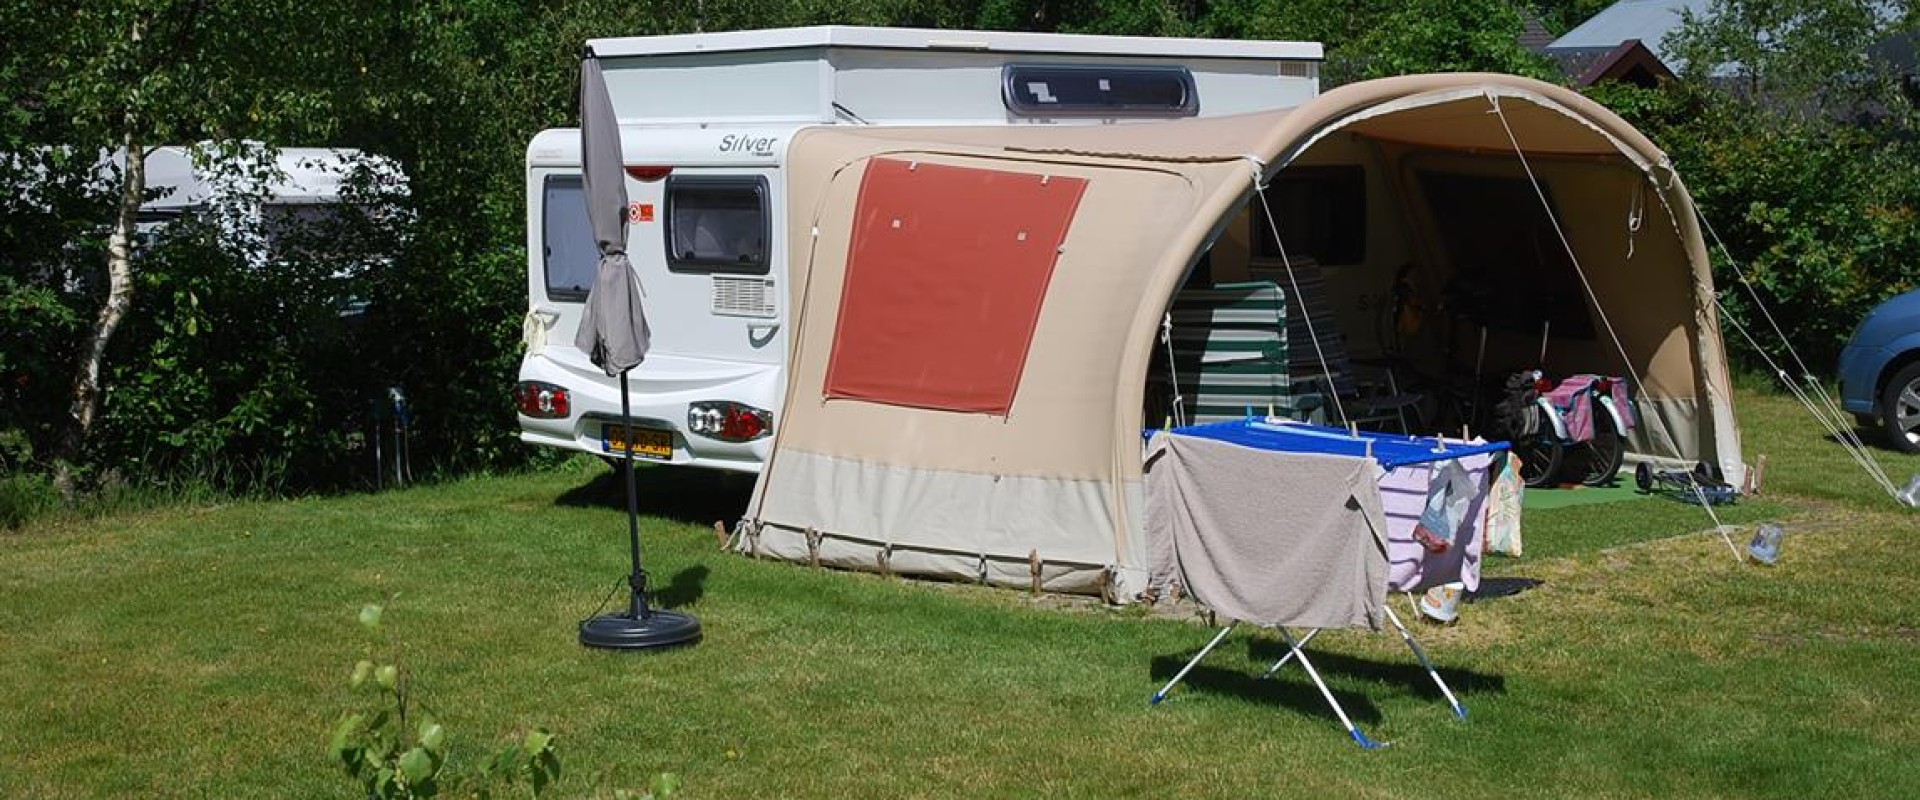 tekort Experiment litteken Op vakantie met een caravan of camper in Drenthe – hoe maakt u de keuze? -  Camping de Berken